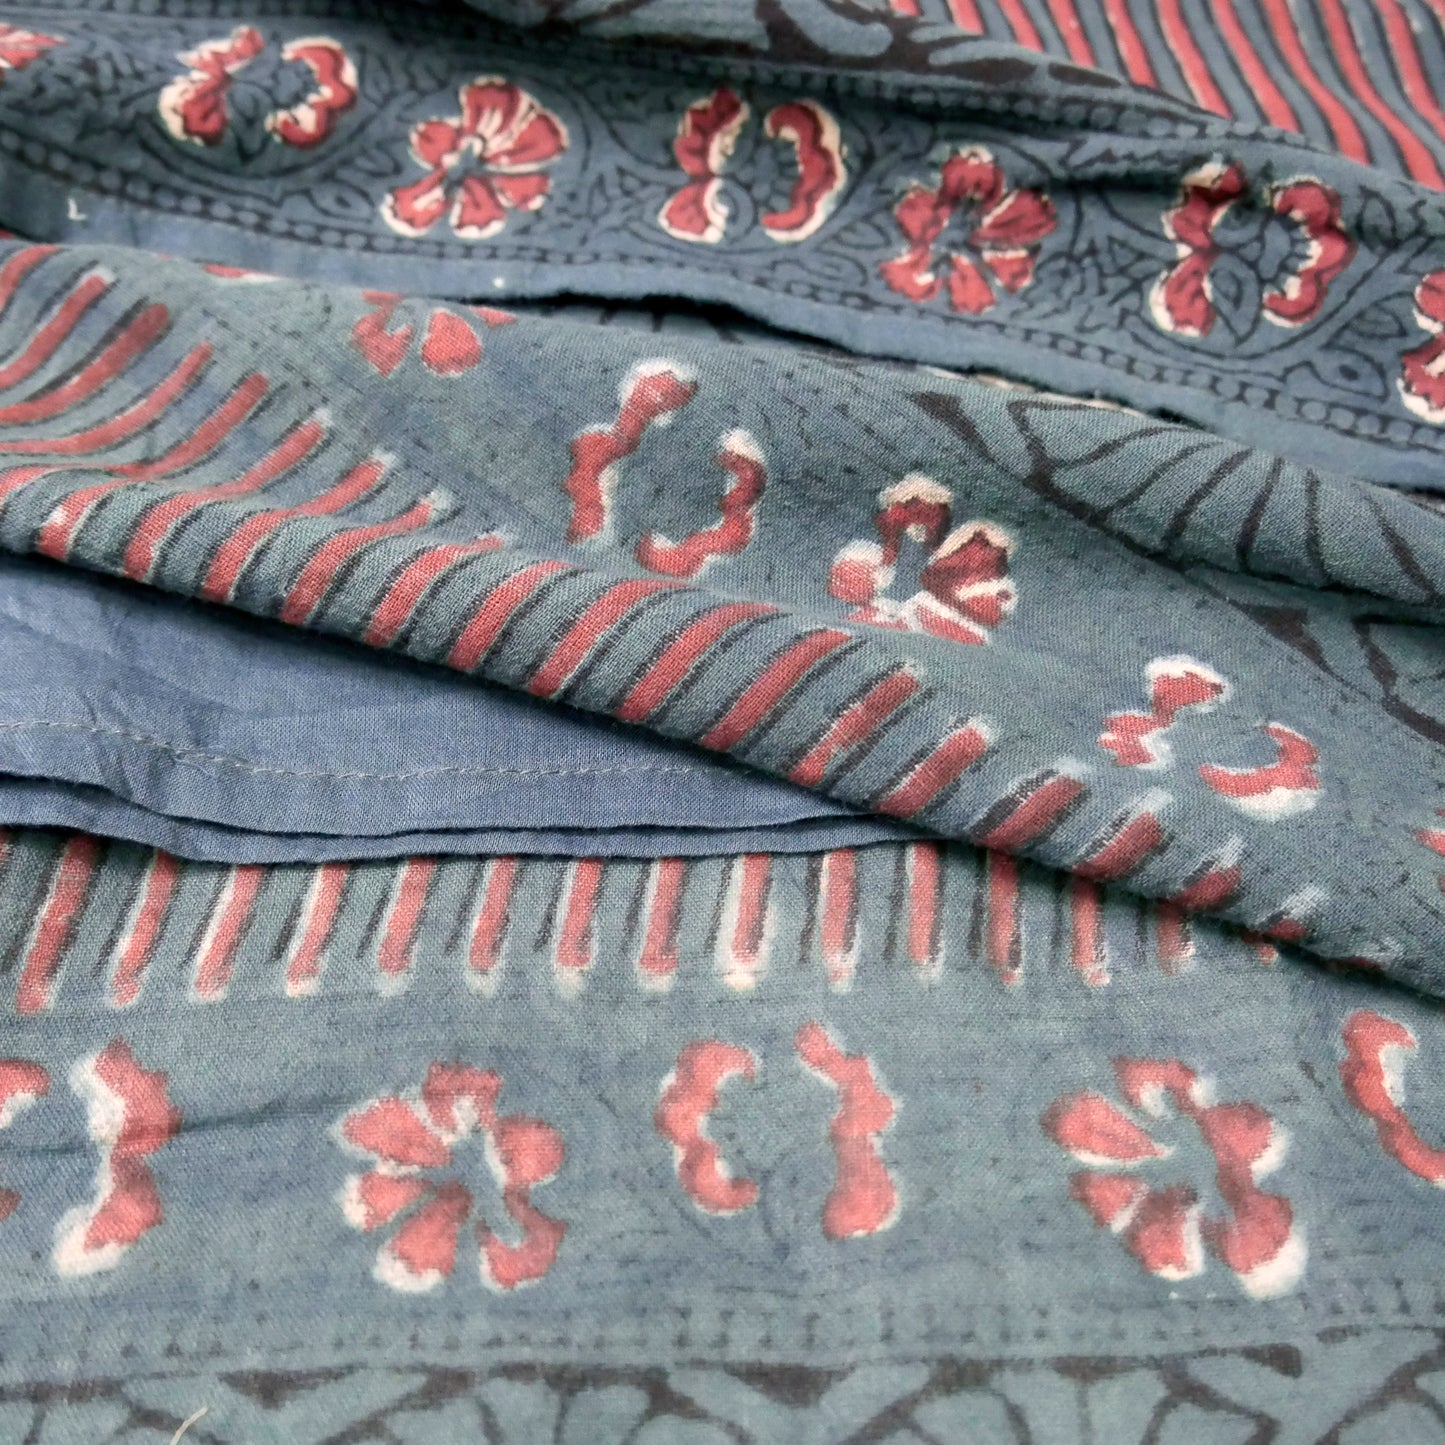 Cotton Bagru Stripe Panel Print Dress